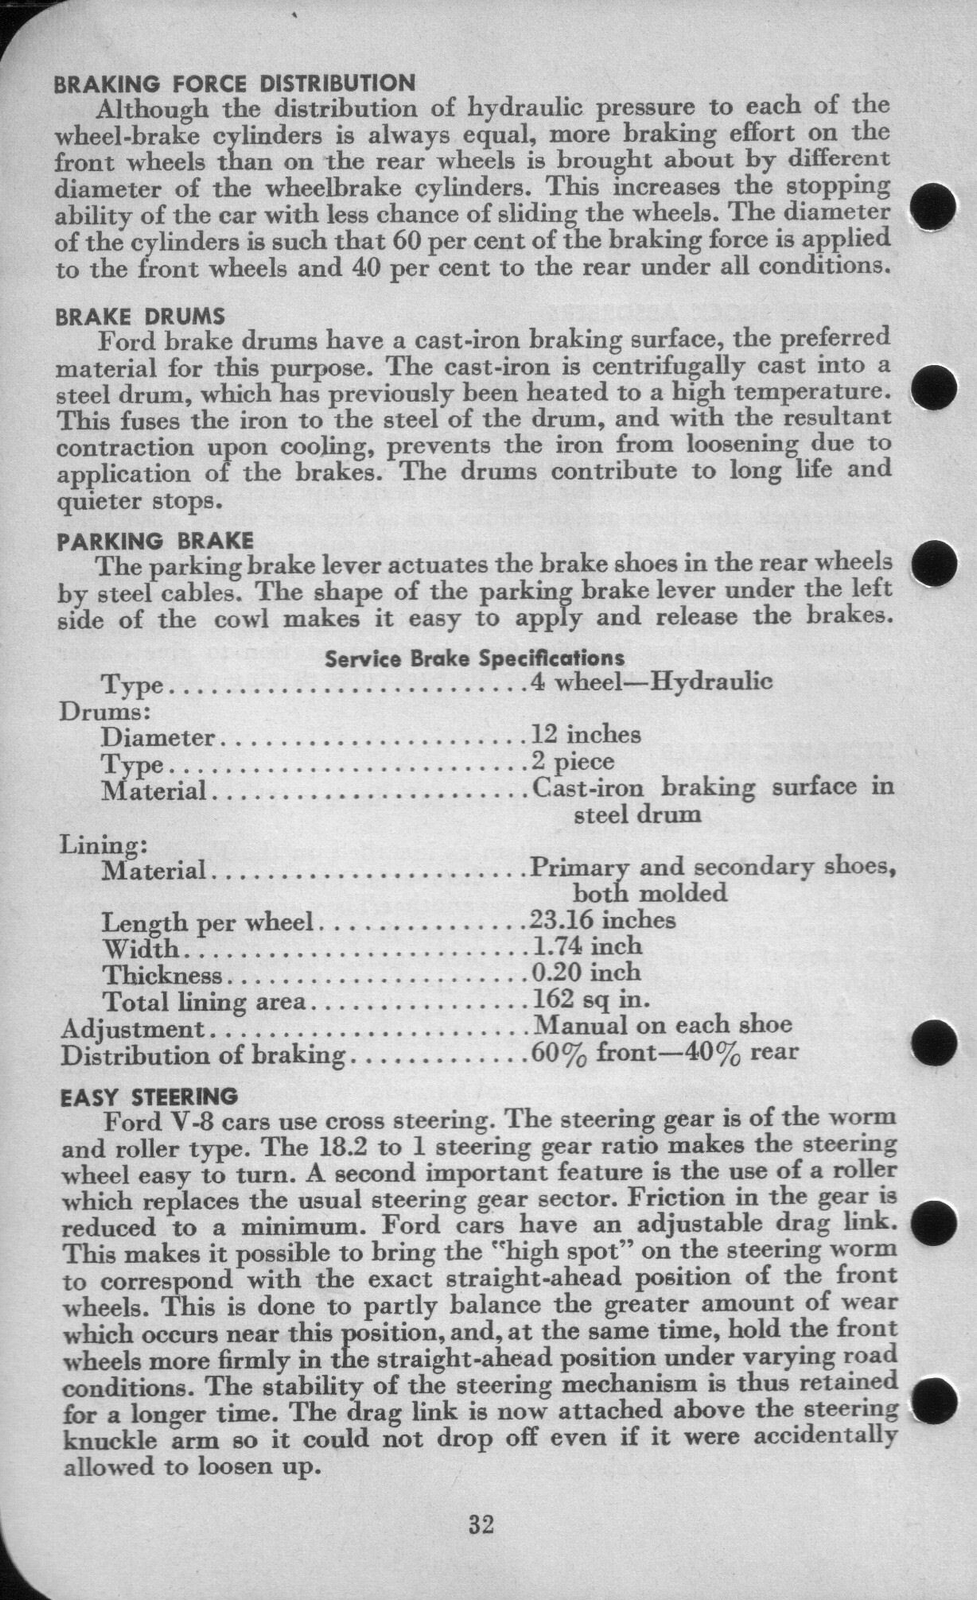 n_1942 Ford Salesmans Reference Manual-032.jpg